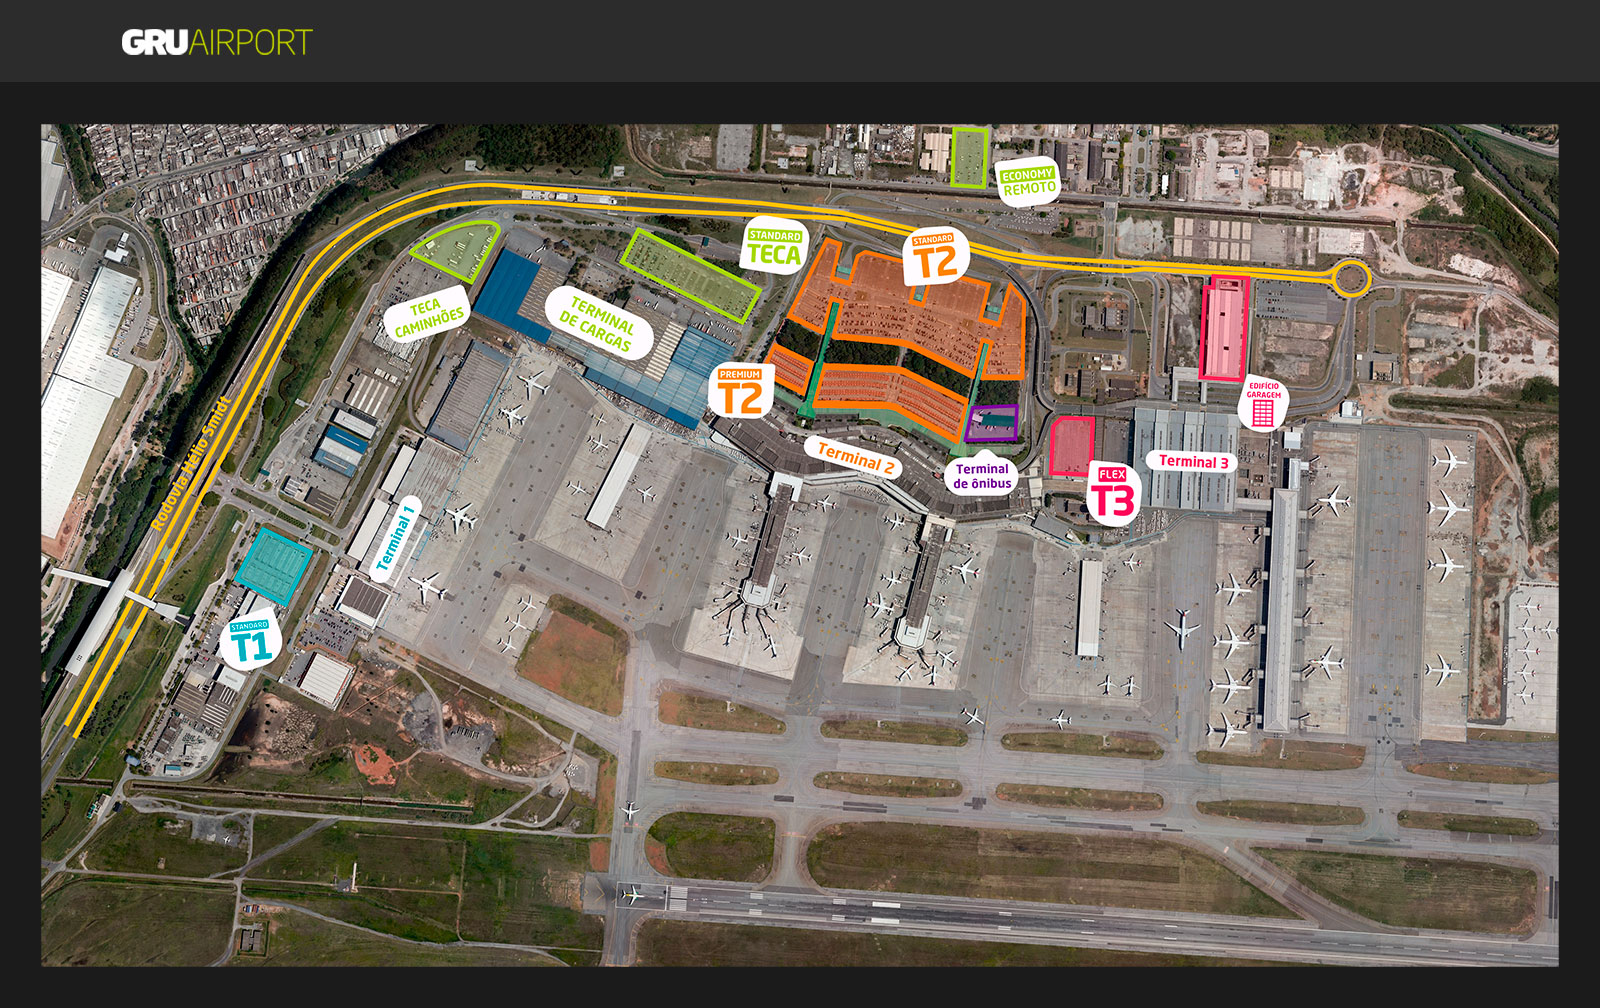 Mapa do estacionamento do aeroporto de Guarulhos